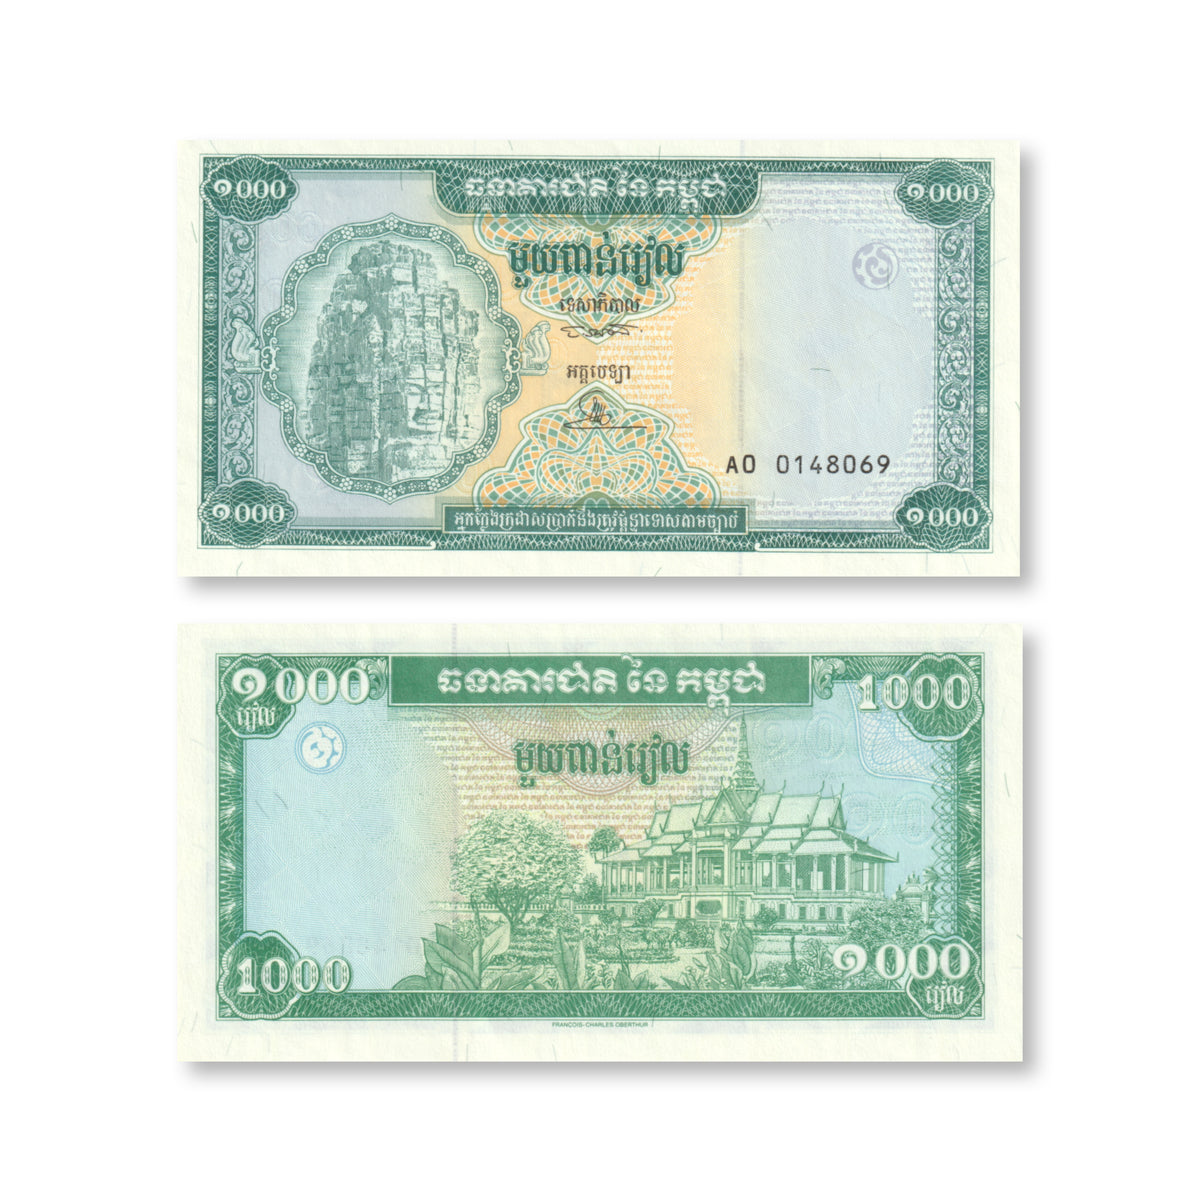 Cambodia 1000 Riels, 1995, B407a, P44a, UNC